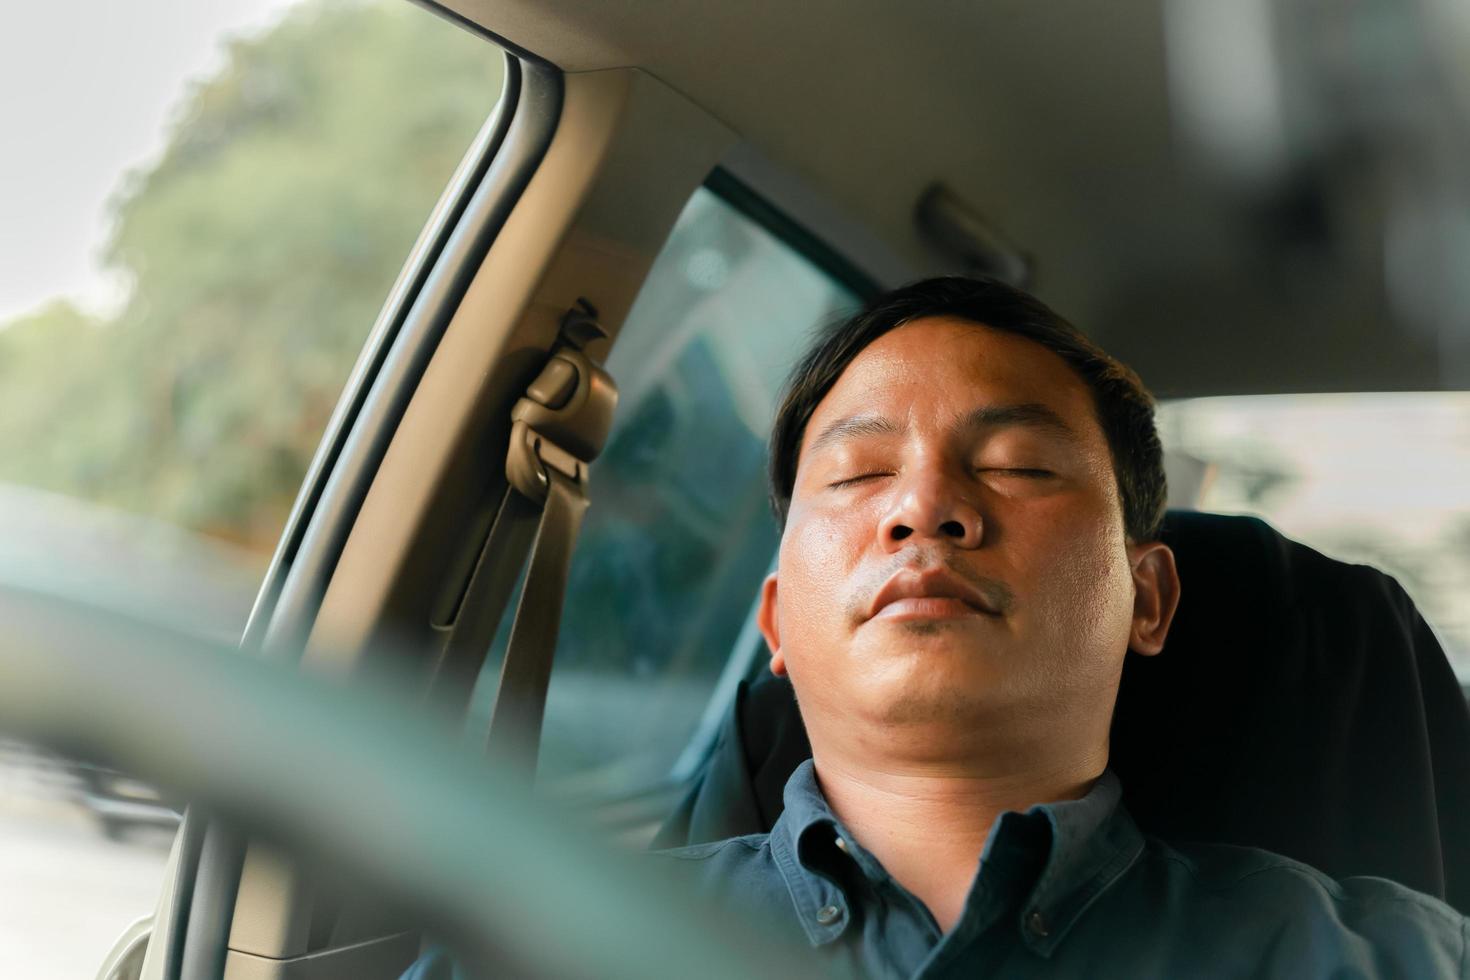 un homme utilise son téléphone en conduisant et s'endort en conduisant. photo